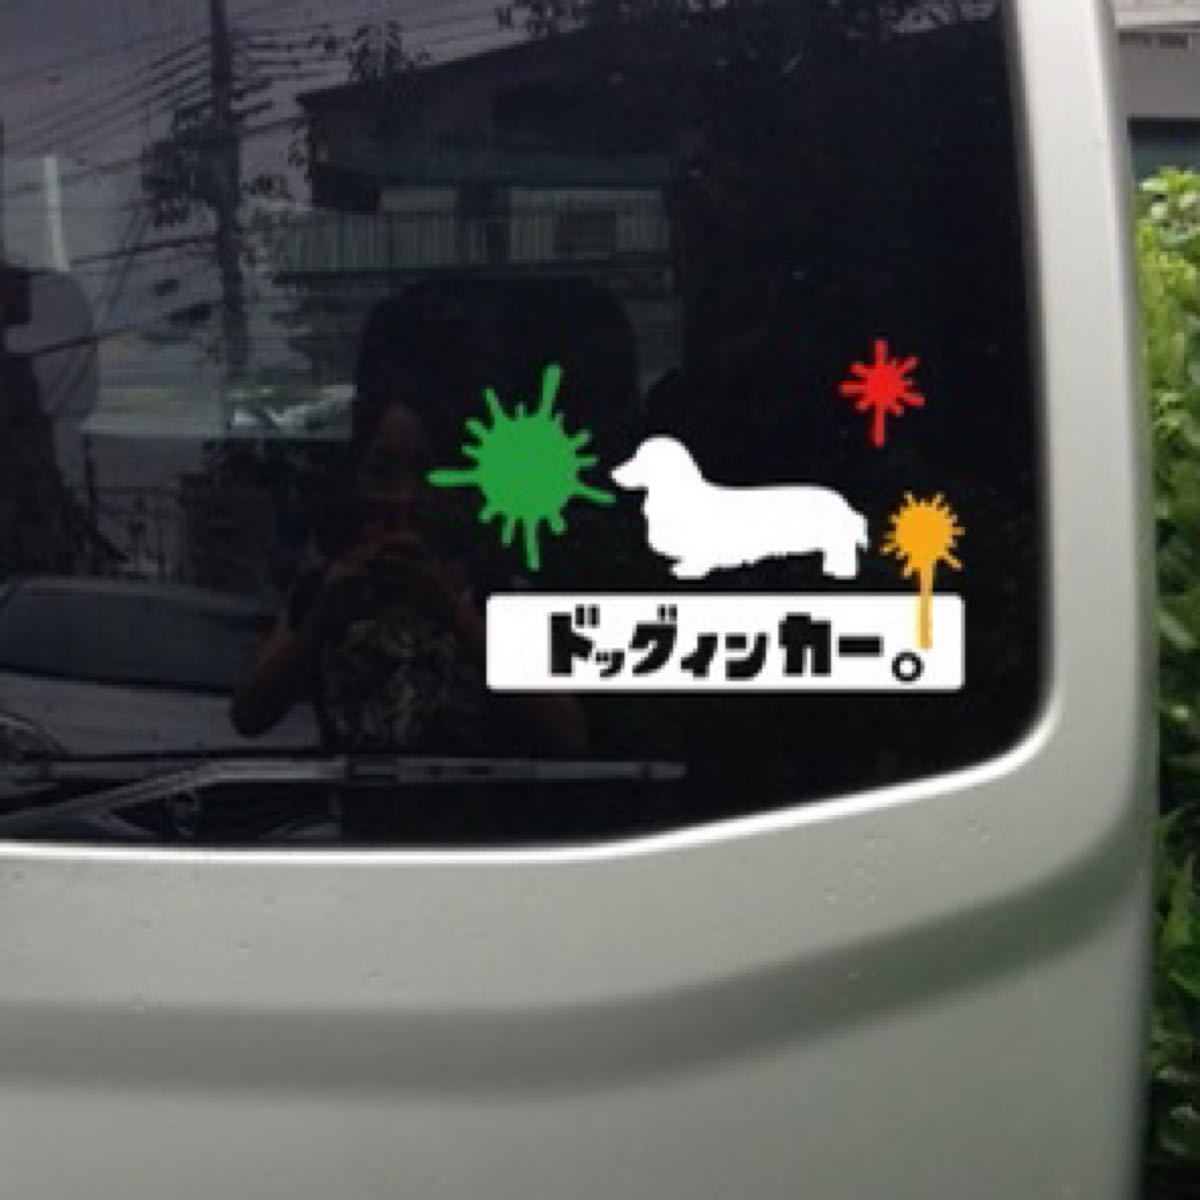 【送料無料】ウェルシュコーギー インク ステッカー ドッグインカー リアガラス 車 犬